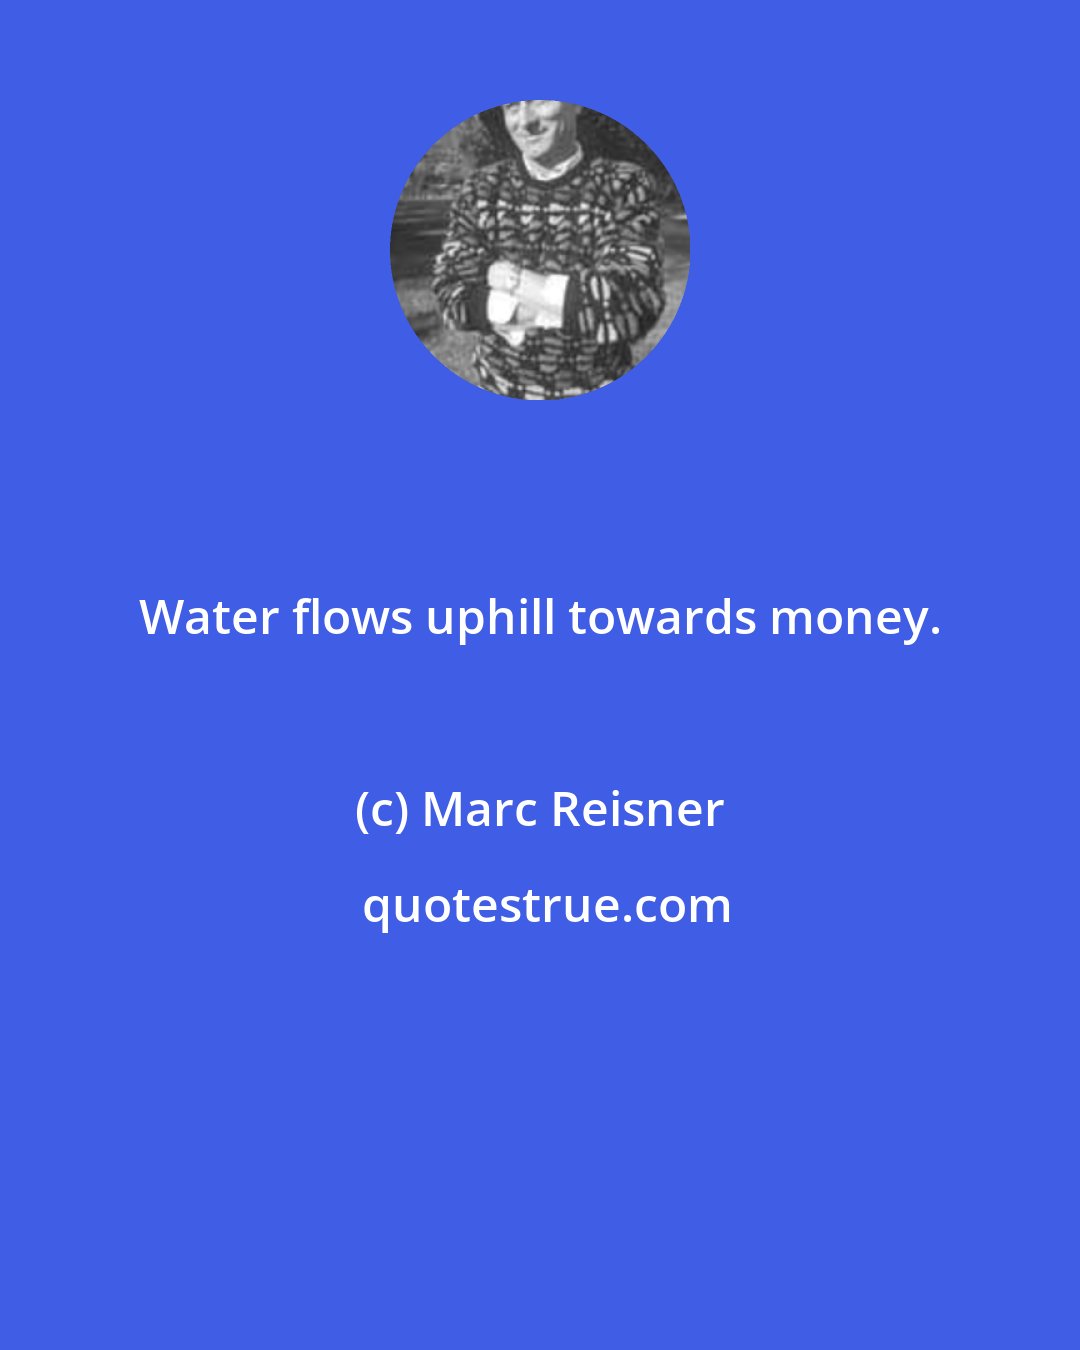 Marc Reisner: Water flows uphill towards money.